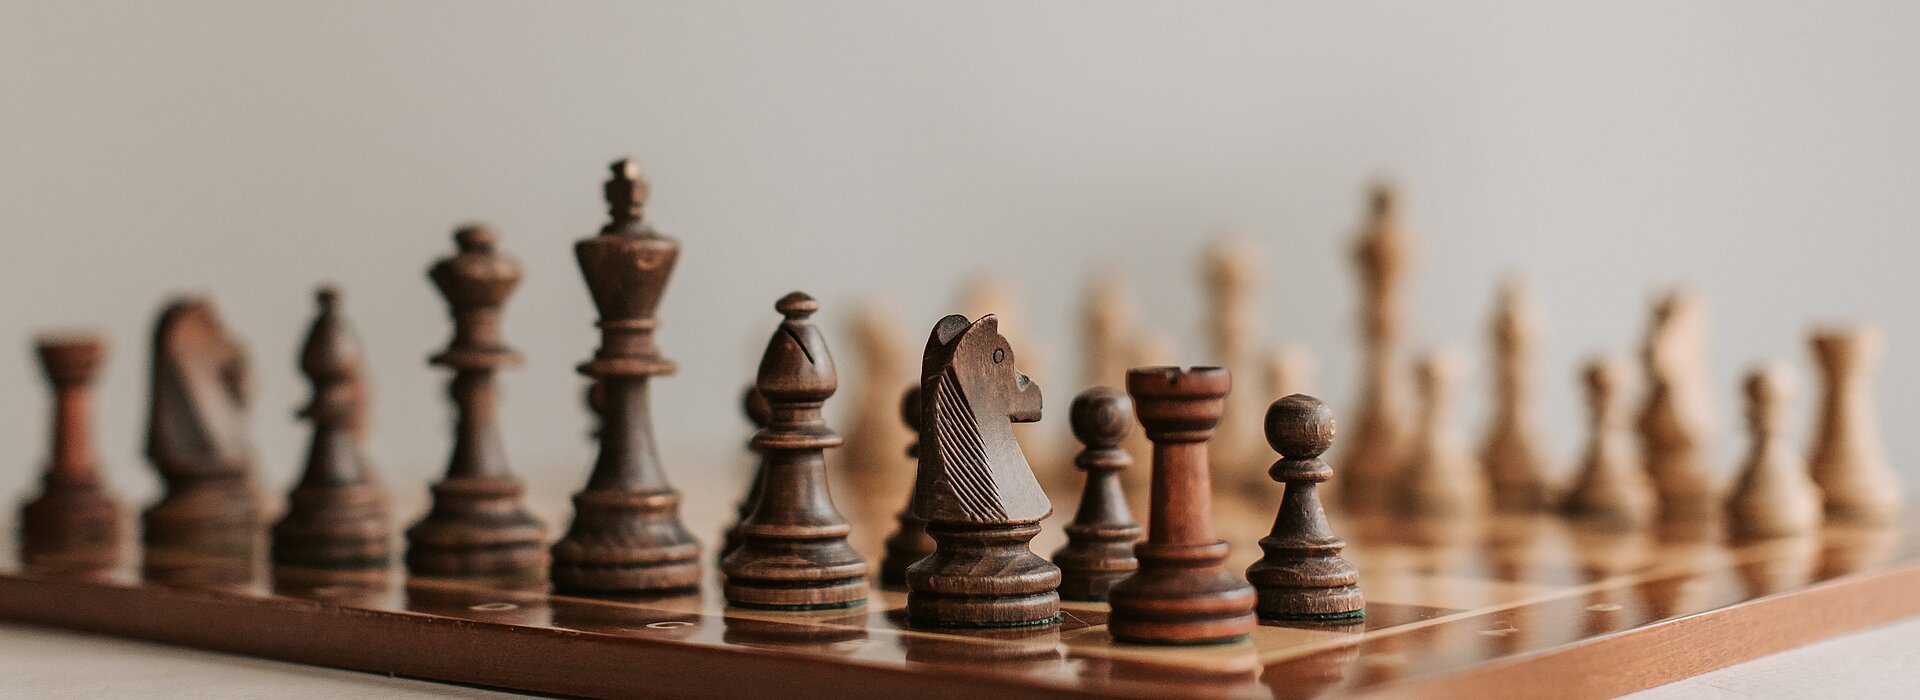 Marketing digital e xadrez o que eles têm em comum?